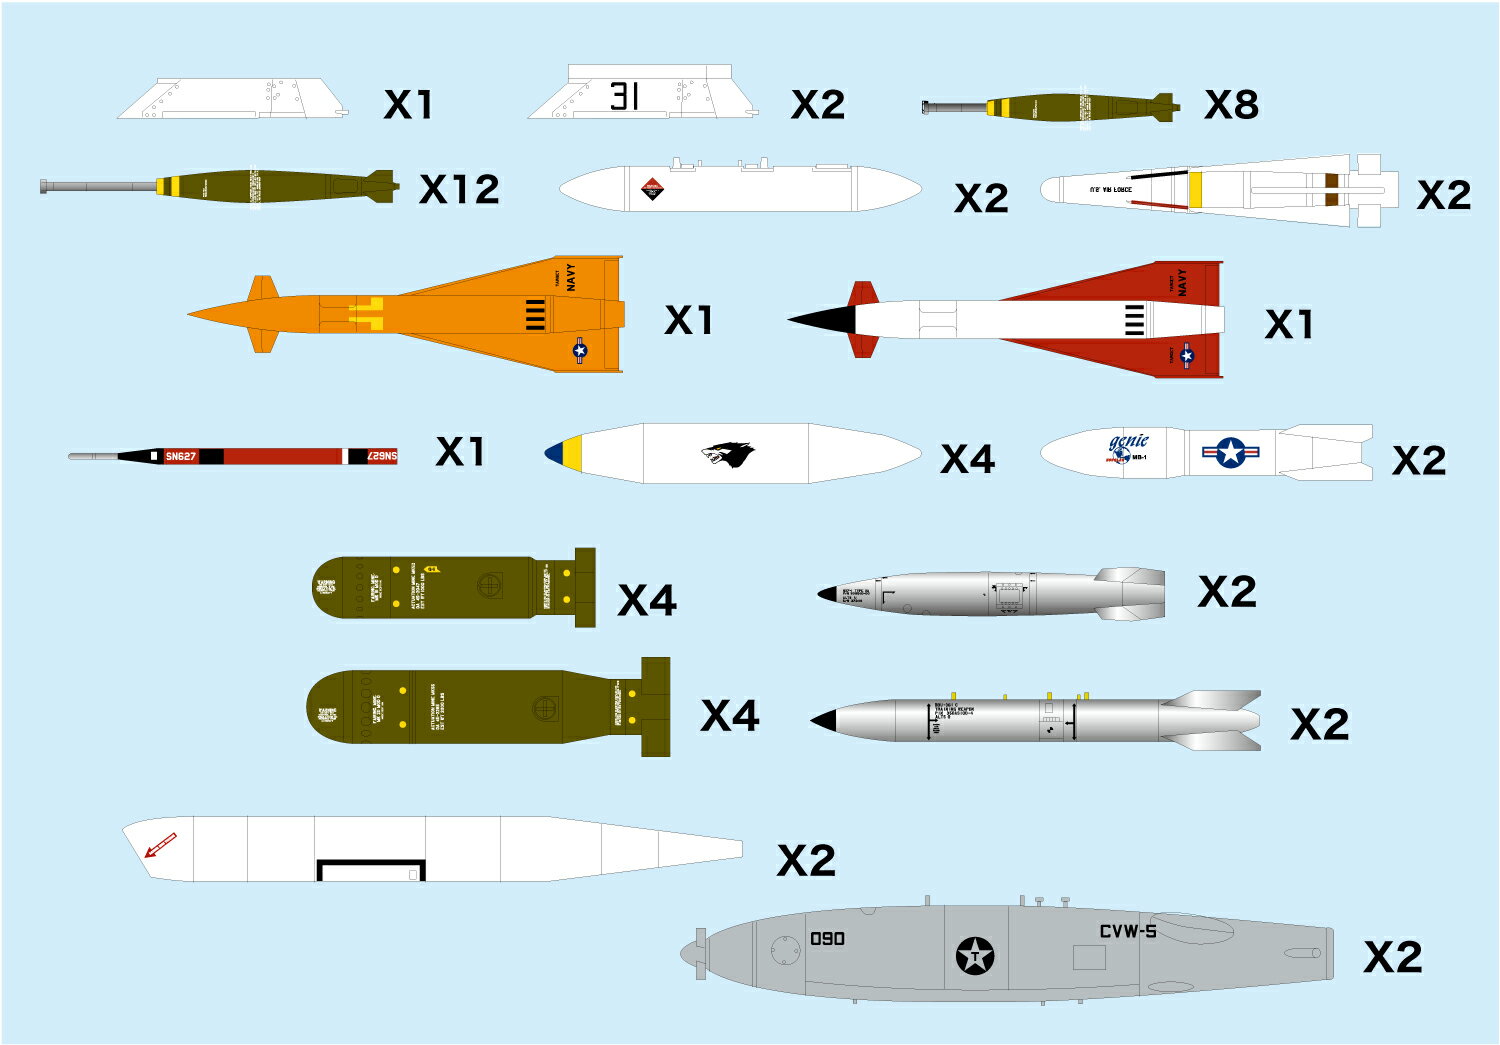 【商品について】 1/144スケールの飛行機モデルに幅広く使えるウェポンセットです。 戦後の軍用機に搭載される様々なミサイルや爆弾などを再現しています。 この製品はアメリカ軍の空中発射式超音速標的ドローンAQM-37ジェイホークと そのランチャーや空対空ミサイルAIM-26ファルコン、さらに、Mk57、Mk61などの核爆弾などにとどまらず、 AN/AWW-7データリンクポッド、バゲッジポッド、FLIR PODなど、17種をモデル化しています。 豊富な兵装を装備した迫力ある姿を再現します。 このセットの兵装はA-4スカイホーク、F-16ファイティングファルコン、F/A-18ホーネット、 F-4ファントムなどに装備された兵装類です。1/144スケールのキットと組み合わせて 豊富な兵装を装備した迫力ある姿をお楽しみいただけます。 各兵装に見られるマーキングはデカールで用意。もちろん搭載に関する細かな説明もセットされています。 【セット内容】 ■LAU-24/A　AQM-37用ランチャー✕1 ■LAU-24/Aアダプターつき AQM-37用ランチャー✕2 ■Mk.81 250ポンド通常爆弾延長信管つき✕8 ■Mk.82 500ポンド通常爆弾延長信管つき✕12 ■AN/AWW-7 データリンクポッド✕2 ■AIM-26 ファルコン✕2 ■AQM-37 ジェイホーク 無人標的機✕1 ■タクトポッド(空中戦闘機動計器)✕1 ■バゲージポッド(カーゴポッド)✕4 ■AIR-2A ジニー✕2 ■Mk.57 核爆弾✕2 ■Mk.61 核爆弾✕2 ■Mk.52 海底機雷✕4 ■Mk.55 海底機雷✕4 ■FLIR(前方監視型赤外線)ポッド✕2 ■D704 空中給油ポッド Buddy Pod&rdquo;バディポッド&rdquo;✕2 ■AQM-37C ジェイホーク 無人標的機✕1 【対応キット】 ●【PF-40】アメリカ空軍 F-16C ●A-4スカイホーク各機種【PDR-5】、【PDR-8】、【PDR-17】、【PDR-29】 ●F-8クルセイダー各機種【PDR-6】、【PDR-9】 ●【AE144-1】 F/A-18E スーパーホーネット、【AE144-2】 F/A-18F スーパーホーネット、【AE144-3】 EA-6B プラウラー ●【FC-2】 アメリカ海軍 F-4JファントムII、【FC-5】アメリカ空軍 F-4EファントムII、【FC-8】 F-105 サンダーチーフ、【FC-9】AV-8B ハリアーII、 【FC-10】F-106A デルタダート、【FC-11】F-15E ストライクイーグル ●F/A-18C ホーネット【FC-14】、【FC-18】 ●F/A-18A ホーネット【FC-16】　●【FC-12】トーネードGR.1　●【FC-13】F-5E/N タイガーII ※【】内は弊社品番